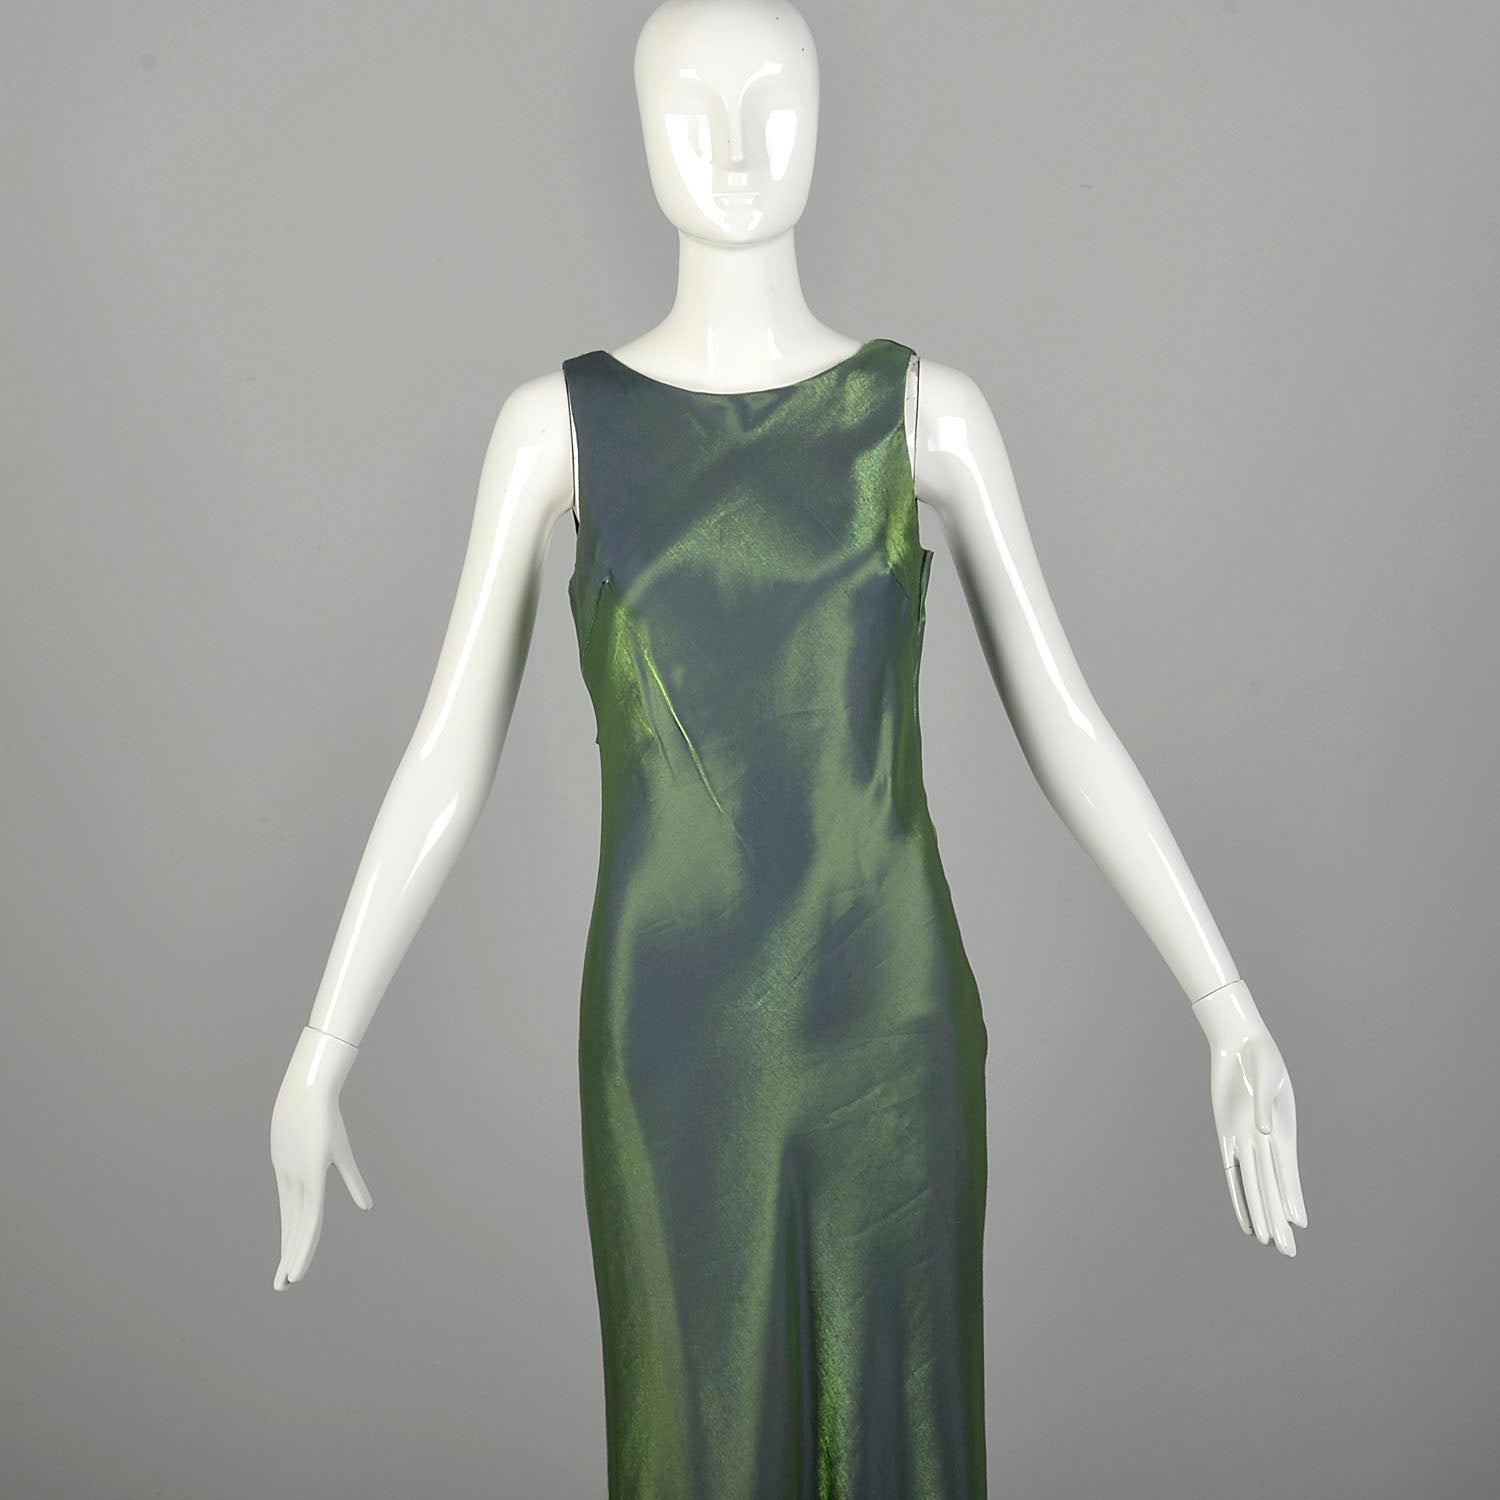 Small 1990s De Laru Prom Dress Iridescent Green Bias Cut Sleeveless Gown